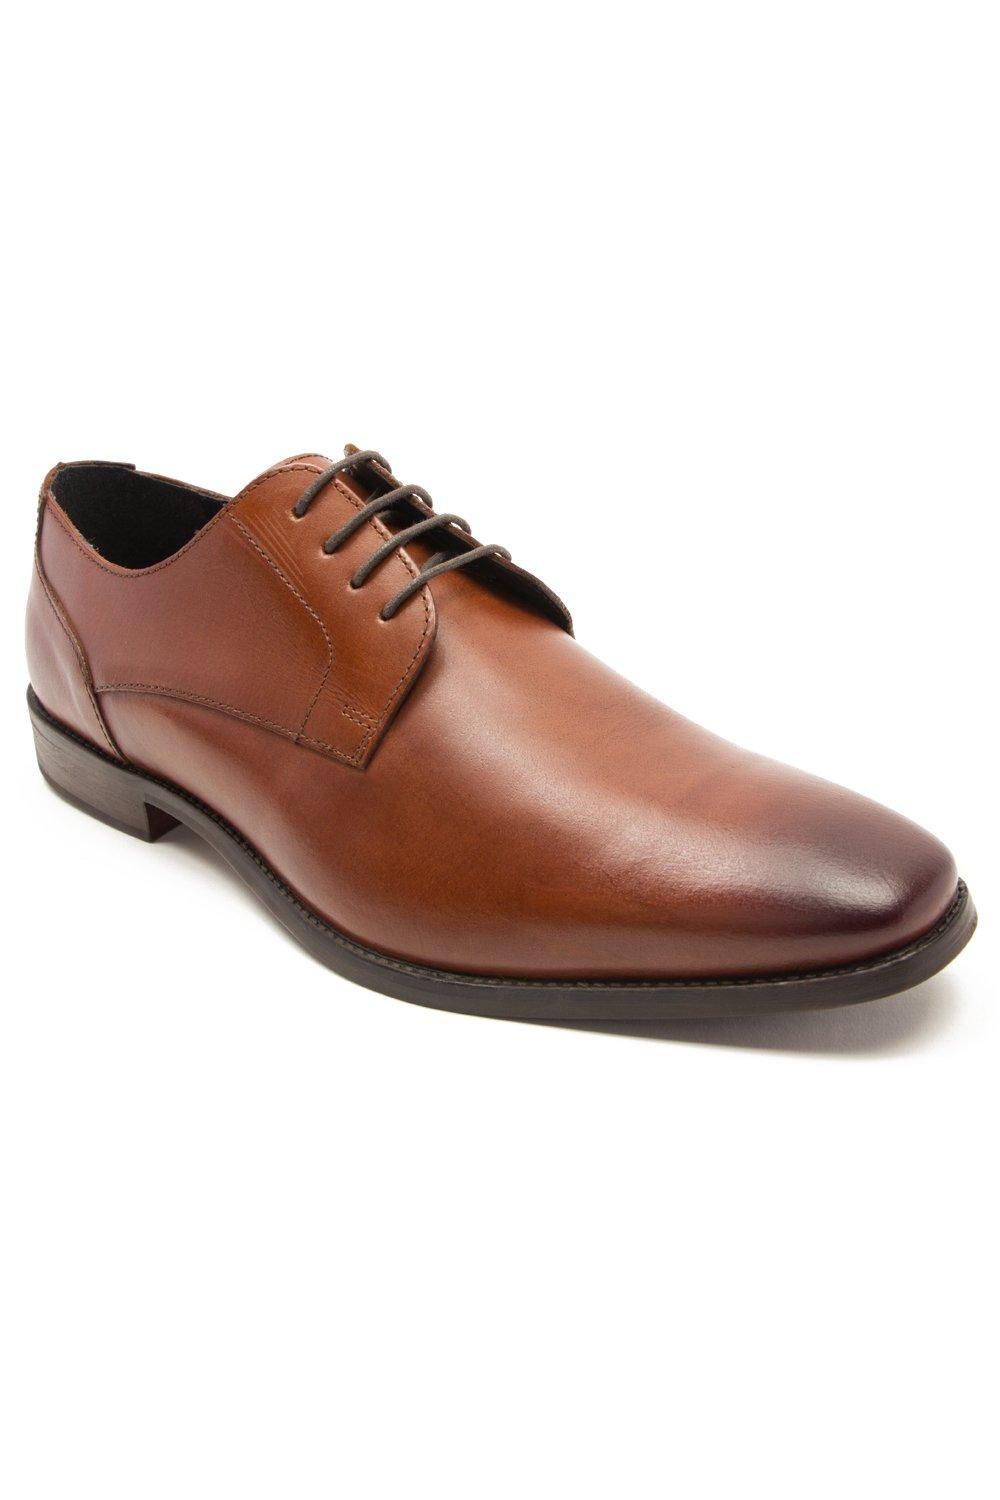 Формальные кожаные туфли дерби на шнуровке 'Falcon' Thomas Crick, коричневый туфли оксфорды мужские деловые из натуральной кожи